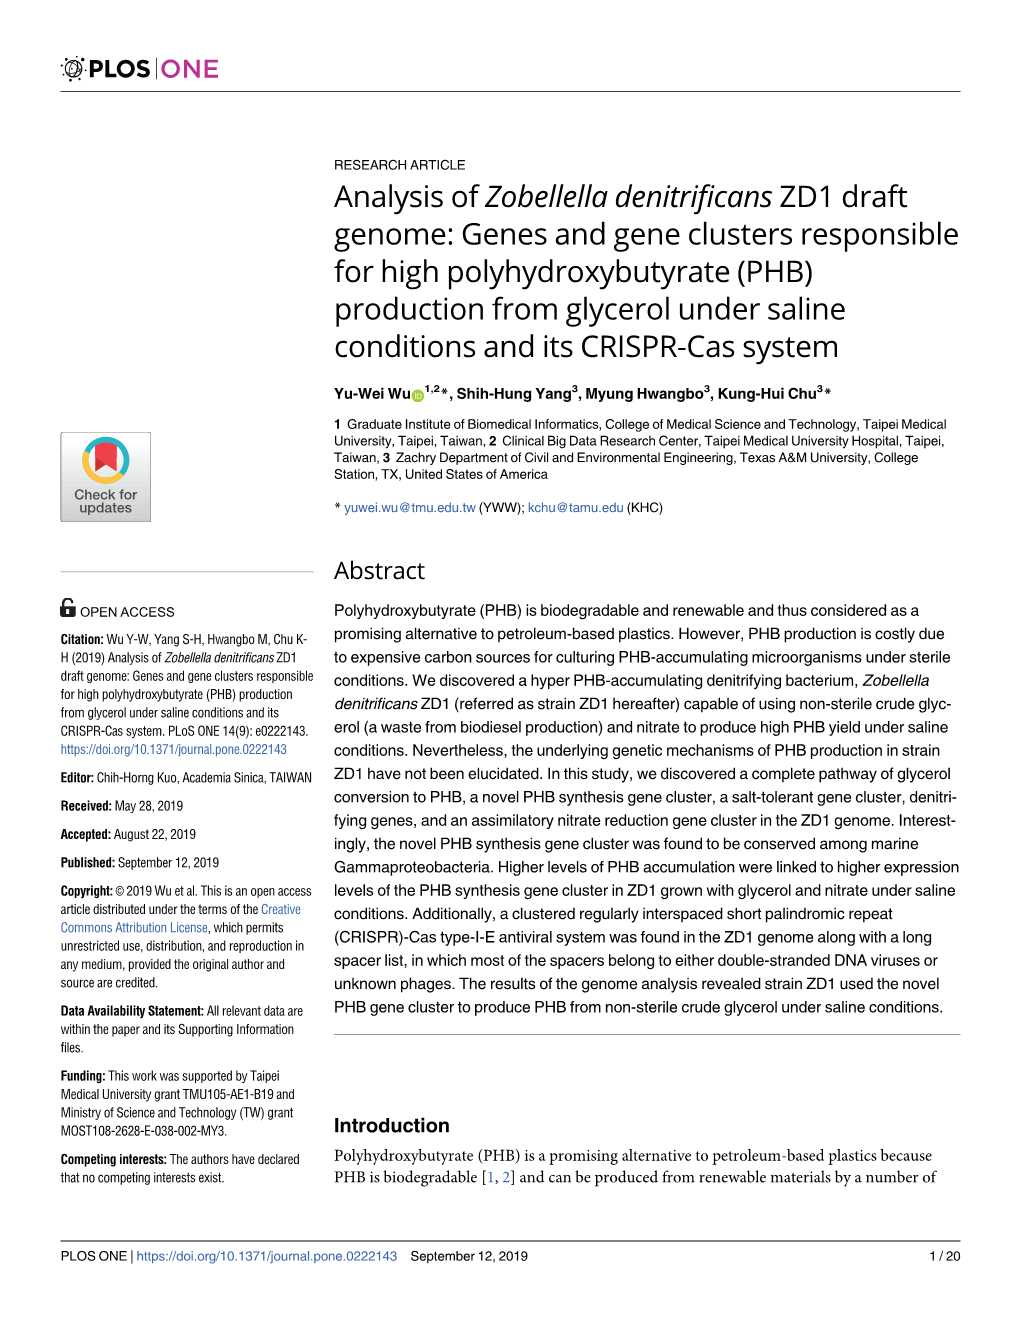 Analysis of Zobellella Denitrificans ZD1 Draft Genome